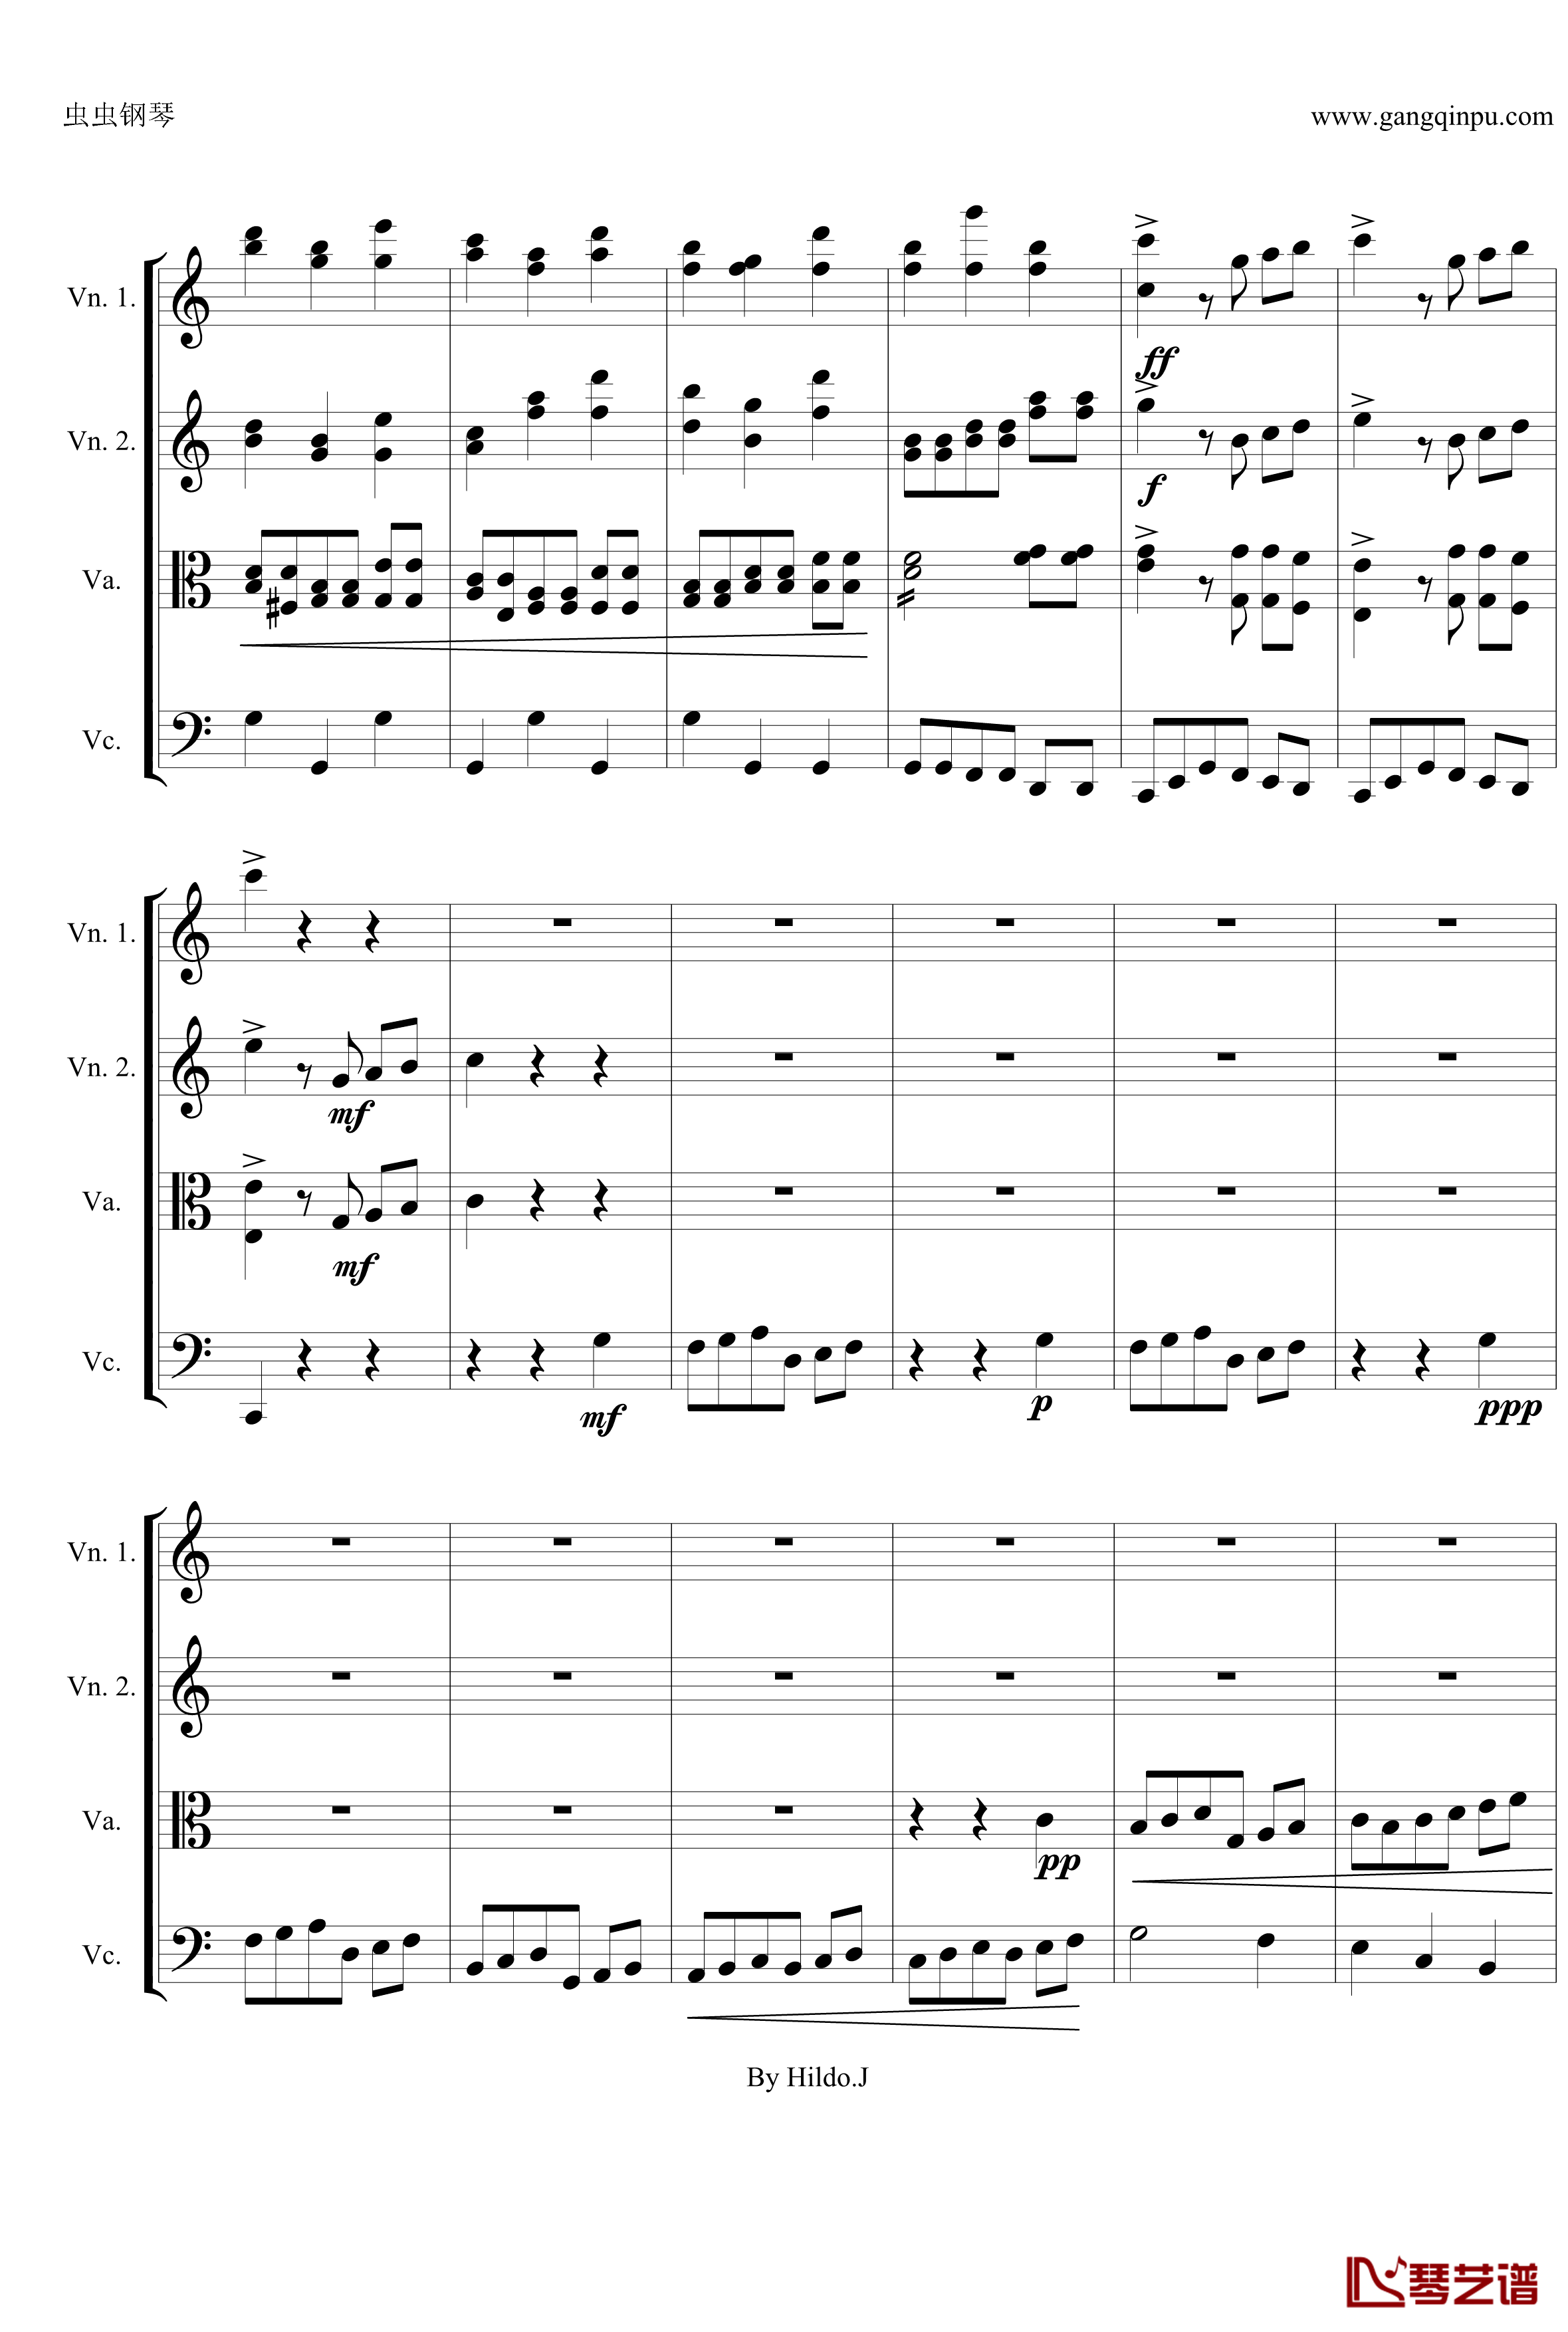 命运交响曲第三乐章钢琴谱-弦乐版-贝多芬-beethoven14